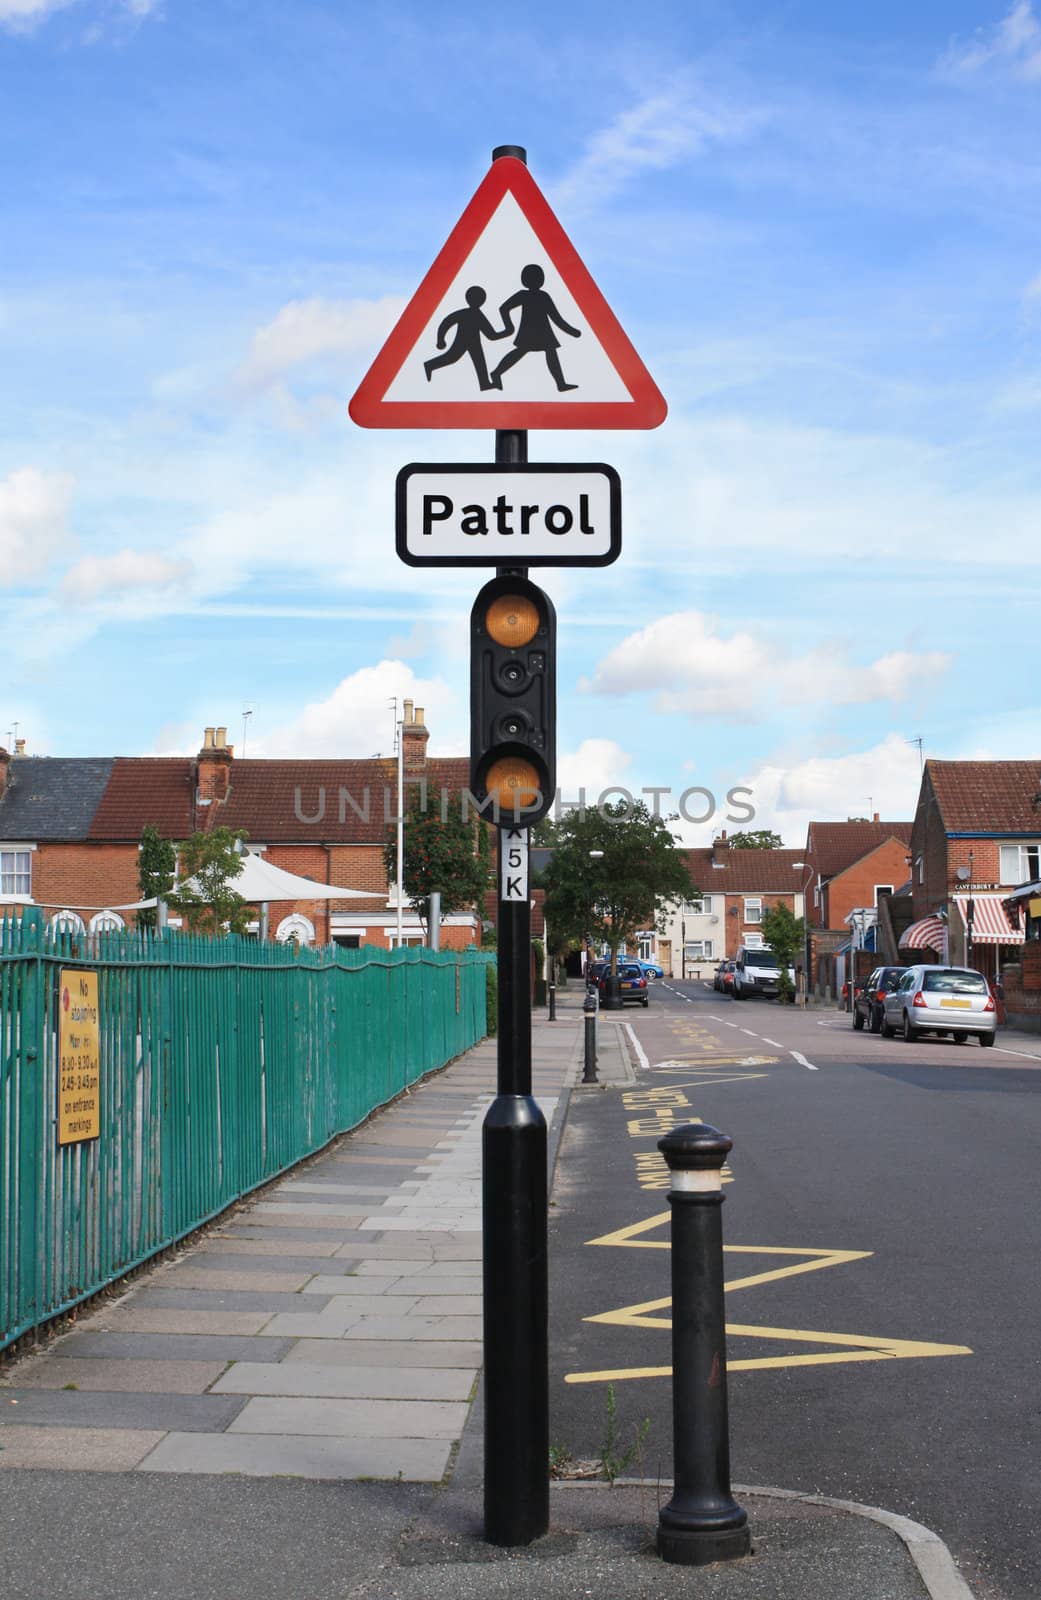 School patrol warning traffic sign by Brigida_Soriano